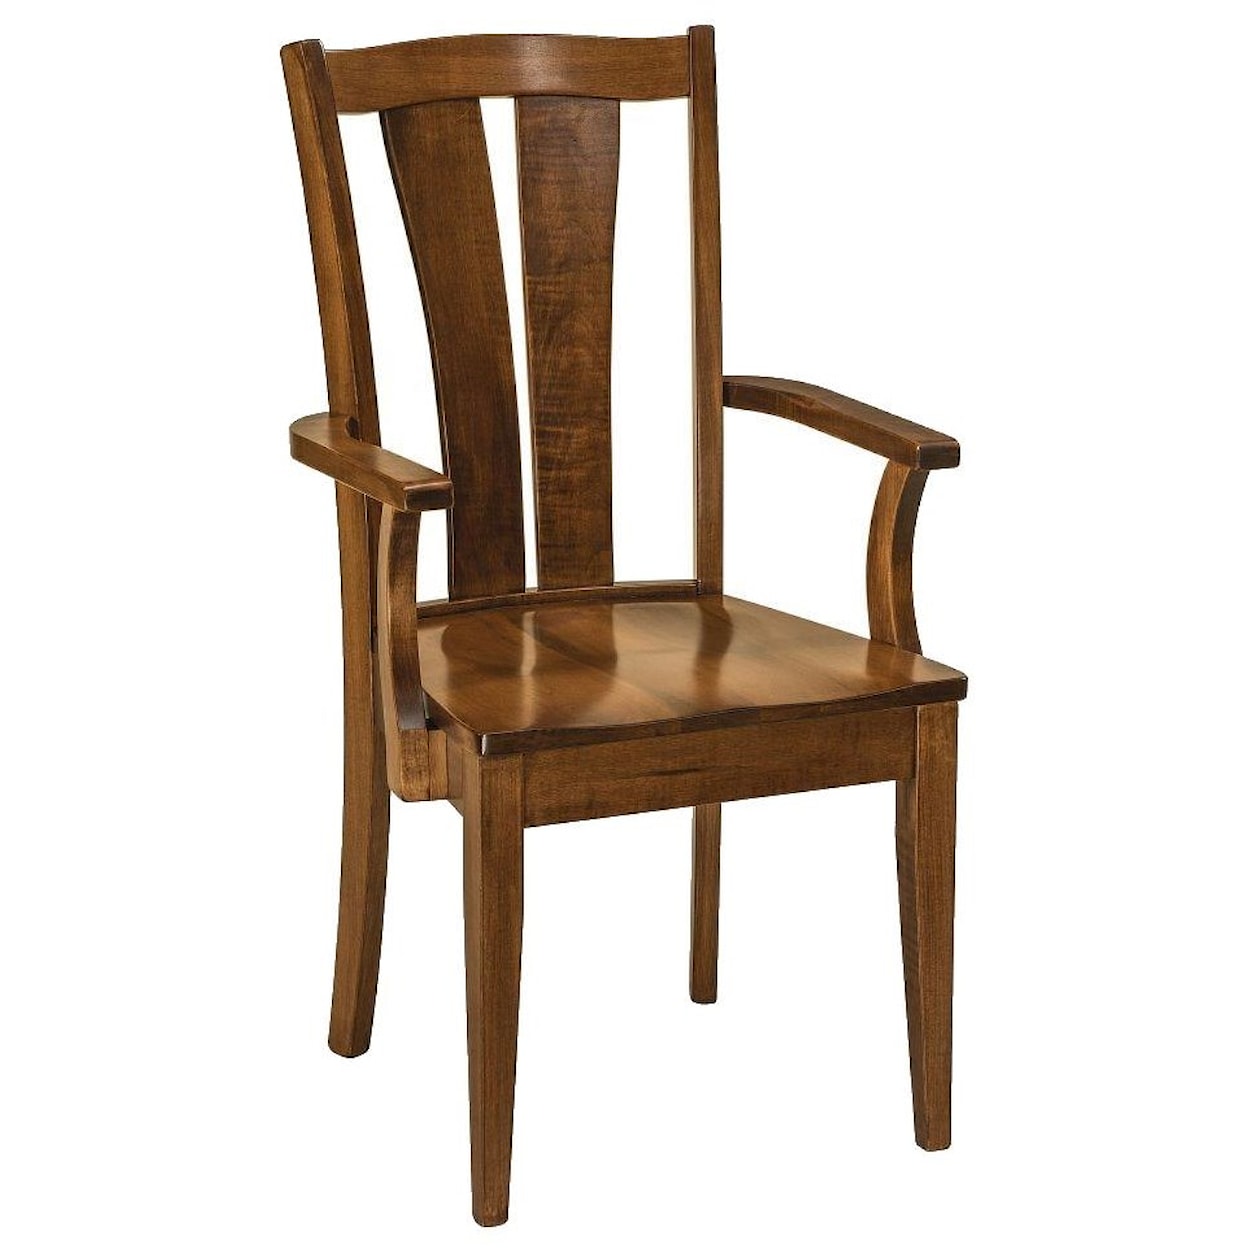 F&N Woodworking Brawley Arm Chair